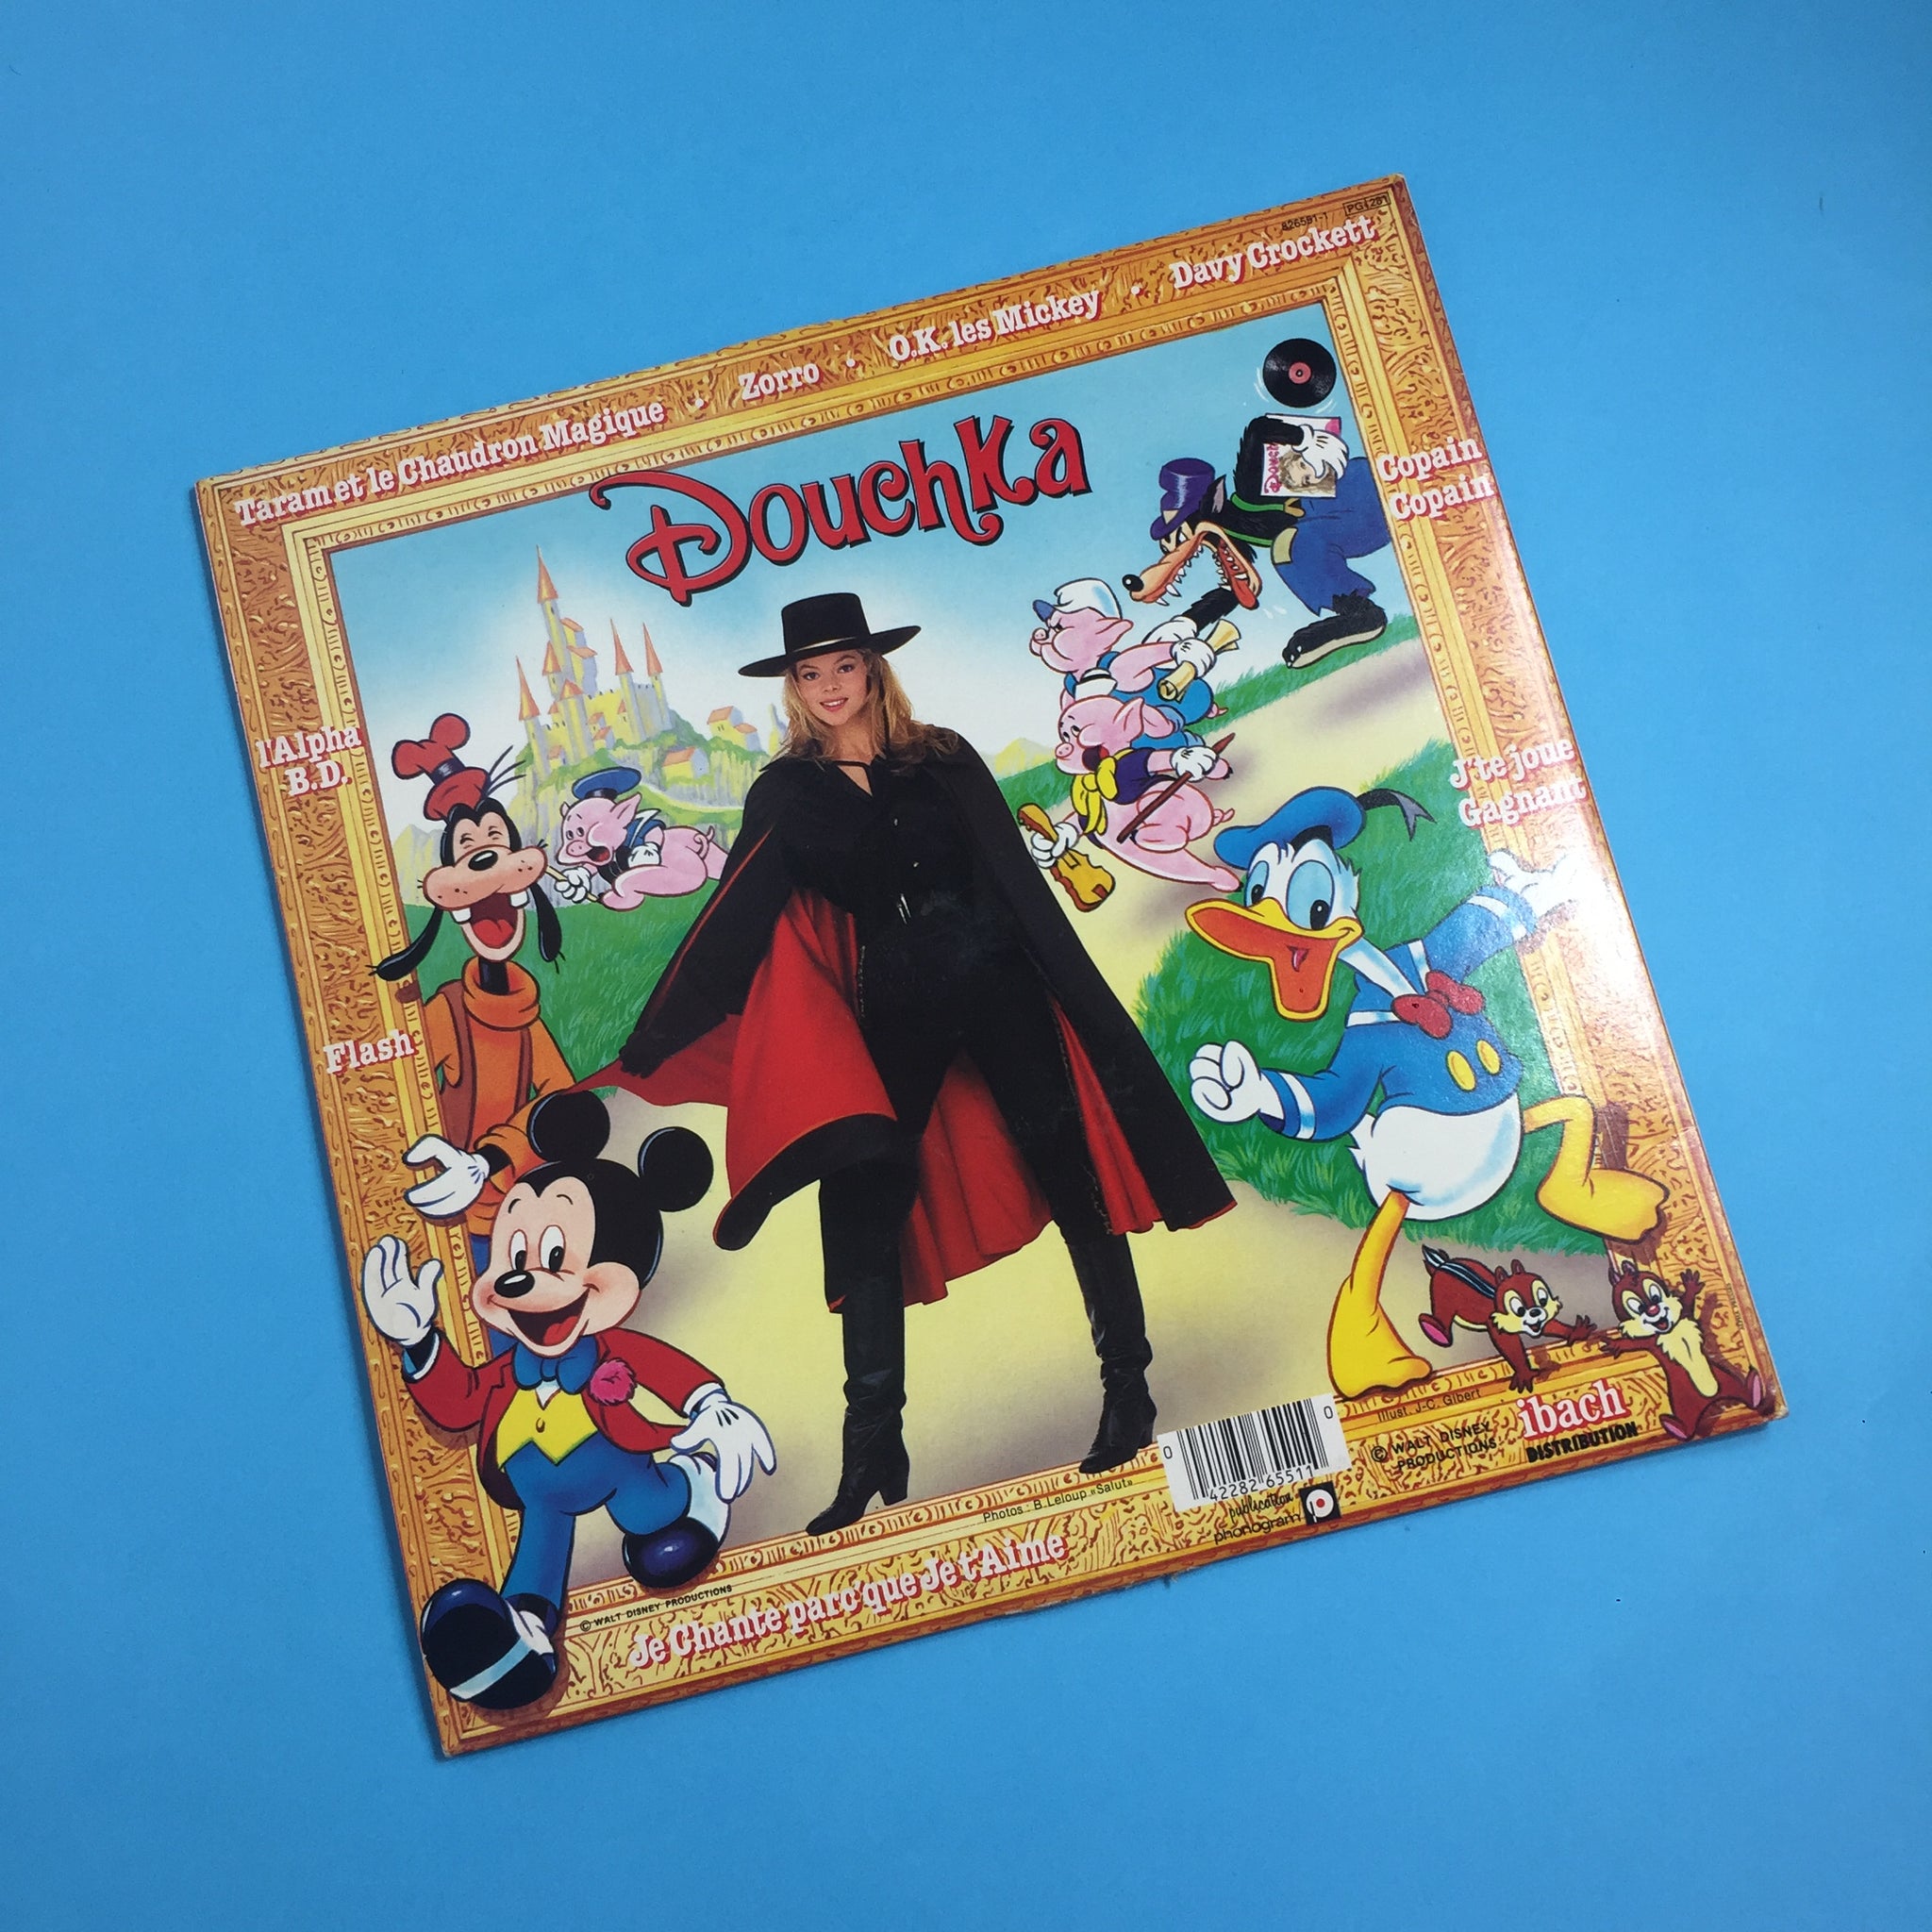 Pochette disque vinyle 33t- Disney danse de Douchka  Achat autres  collections - Ref RO70244051 